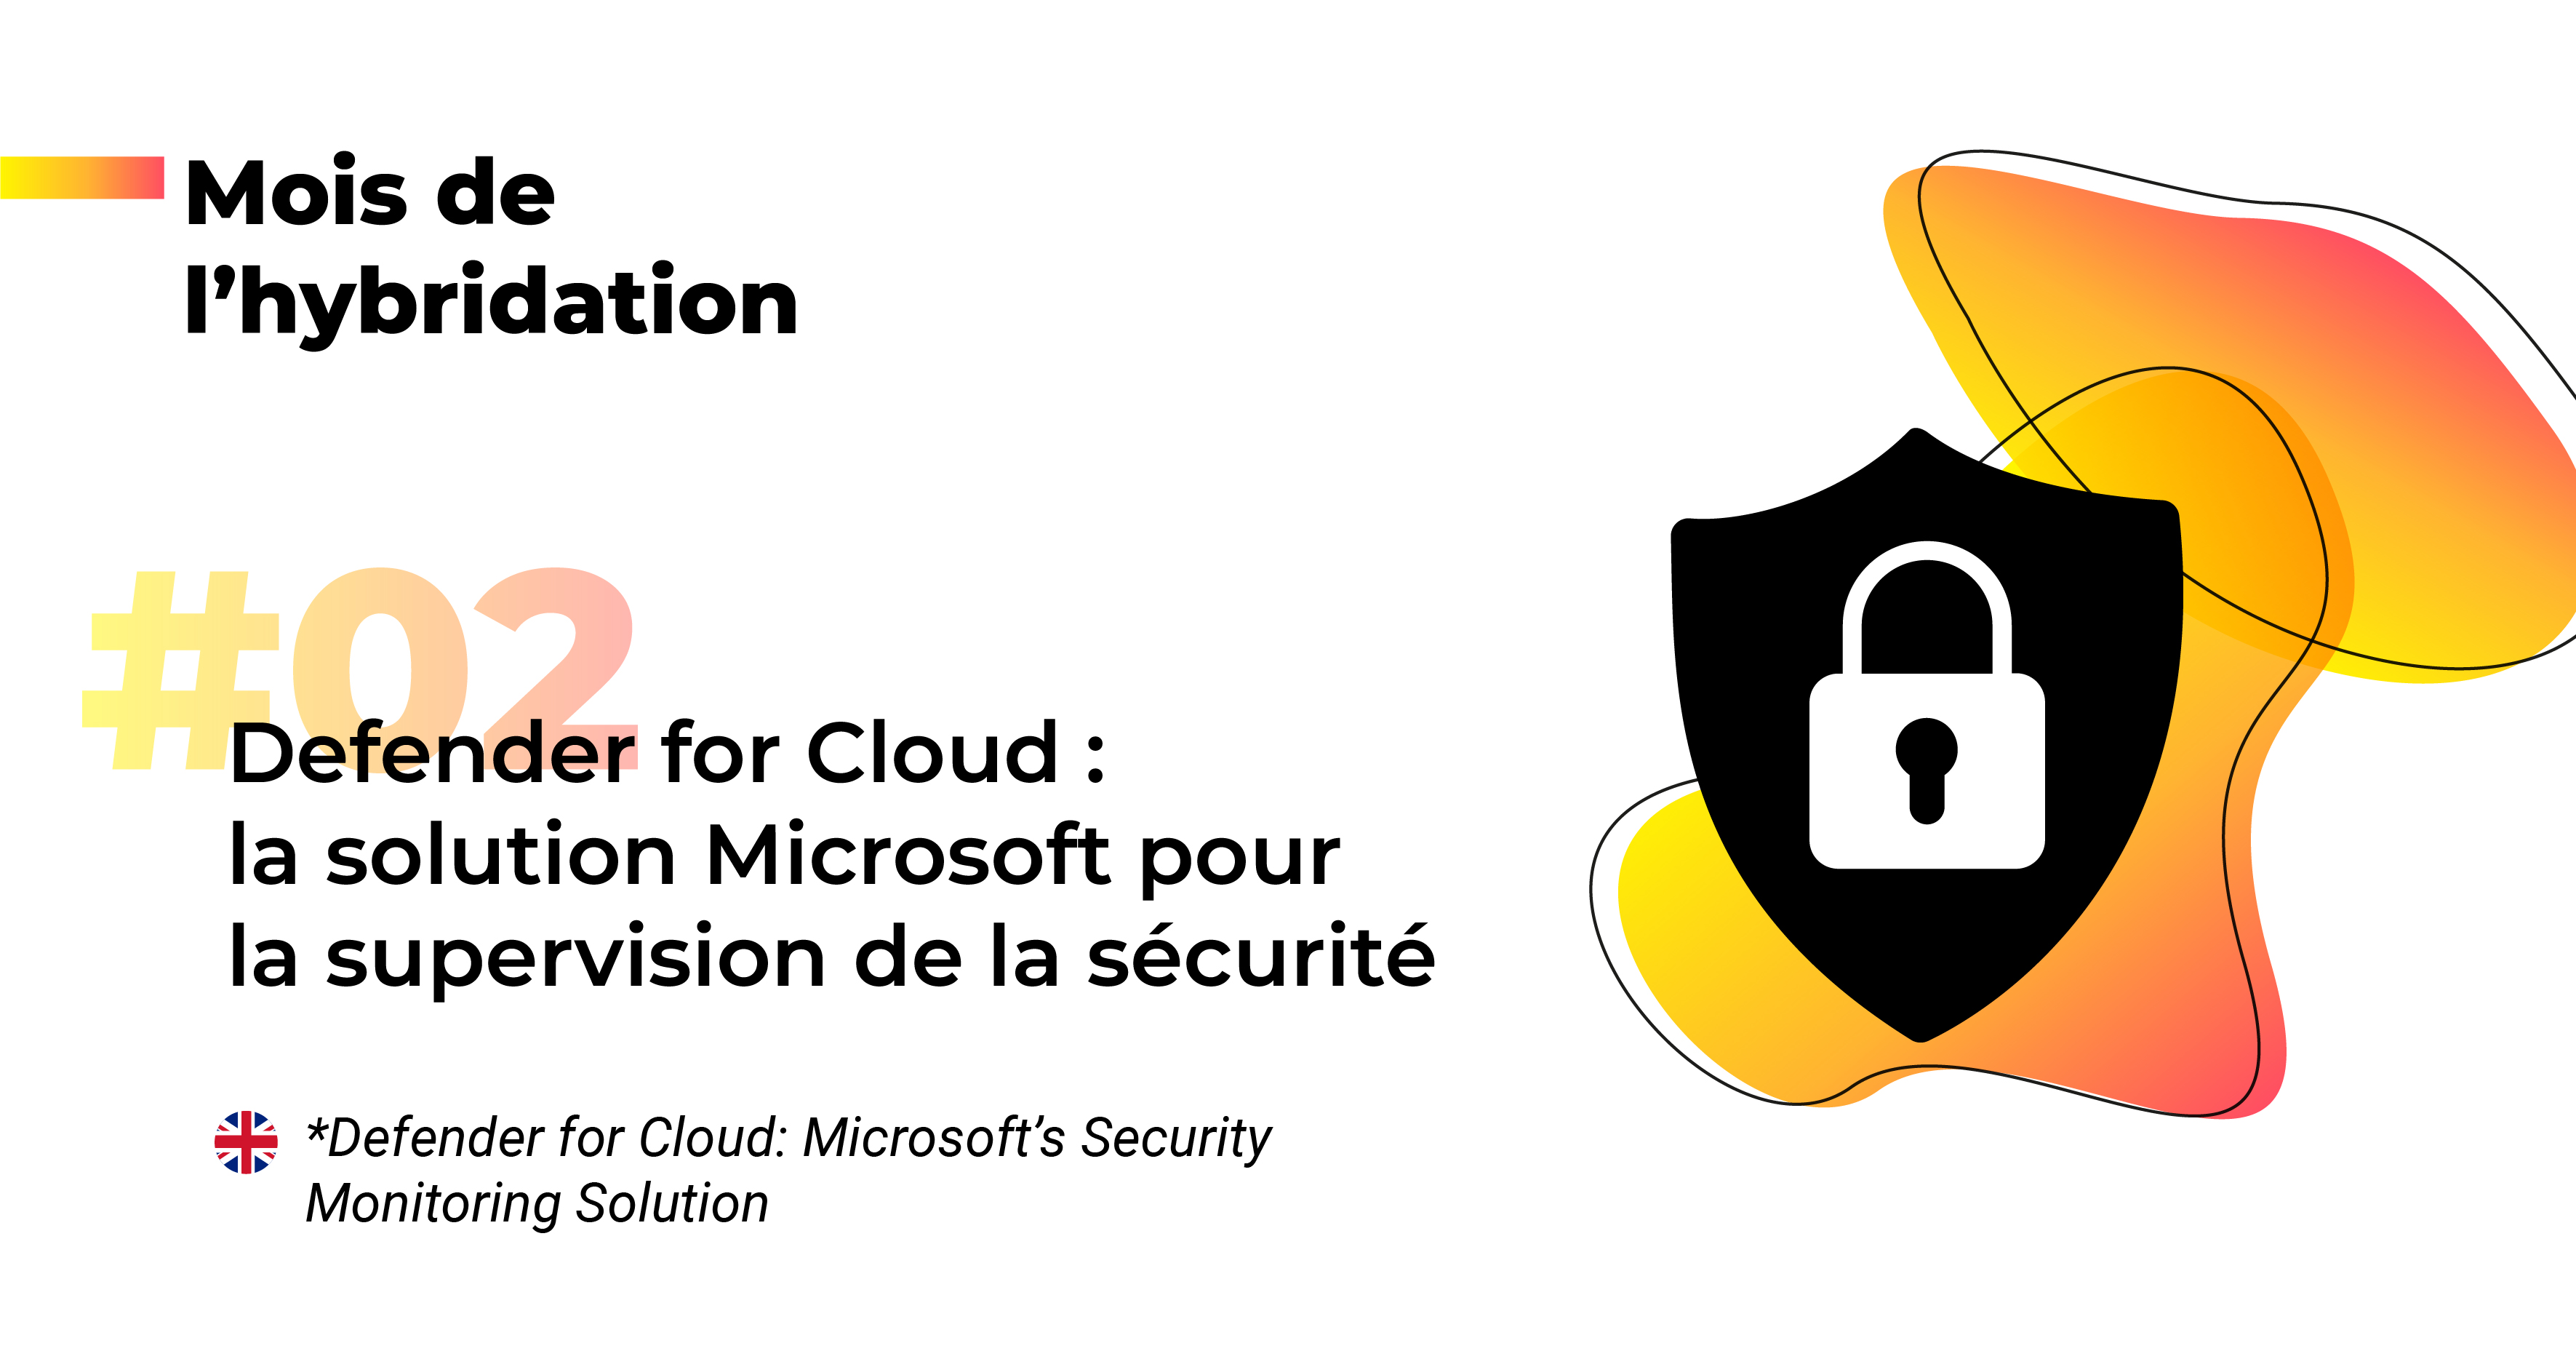 Defender for Cloud : la solution Microsoft pour la supervision de la sécurité